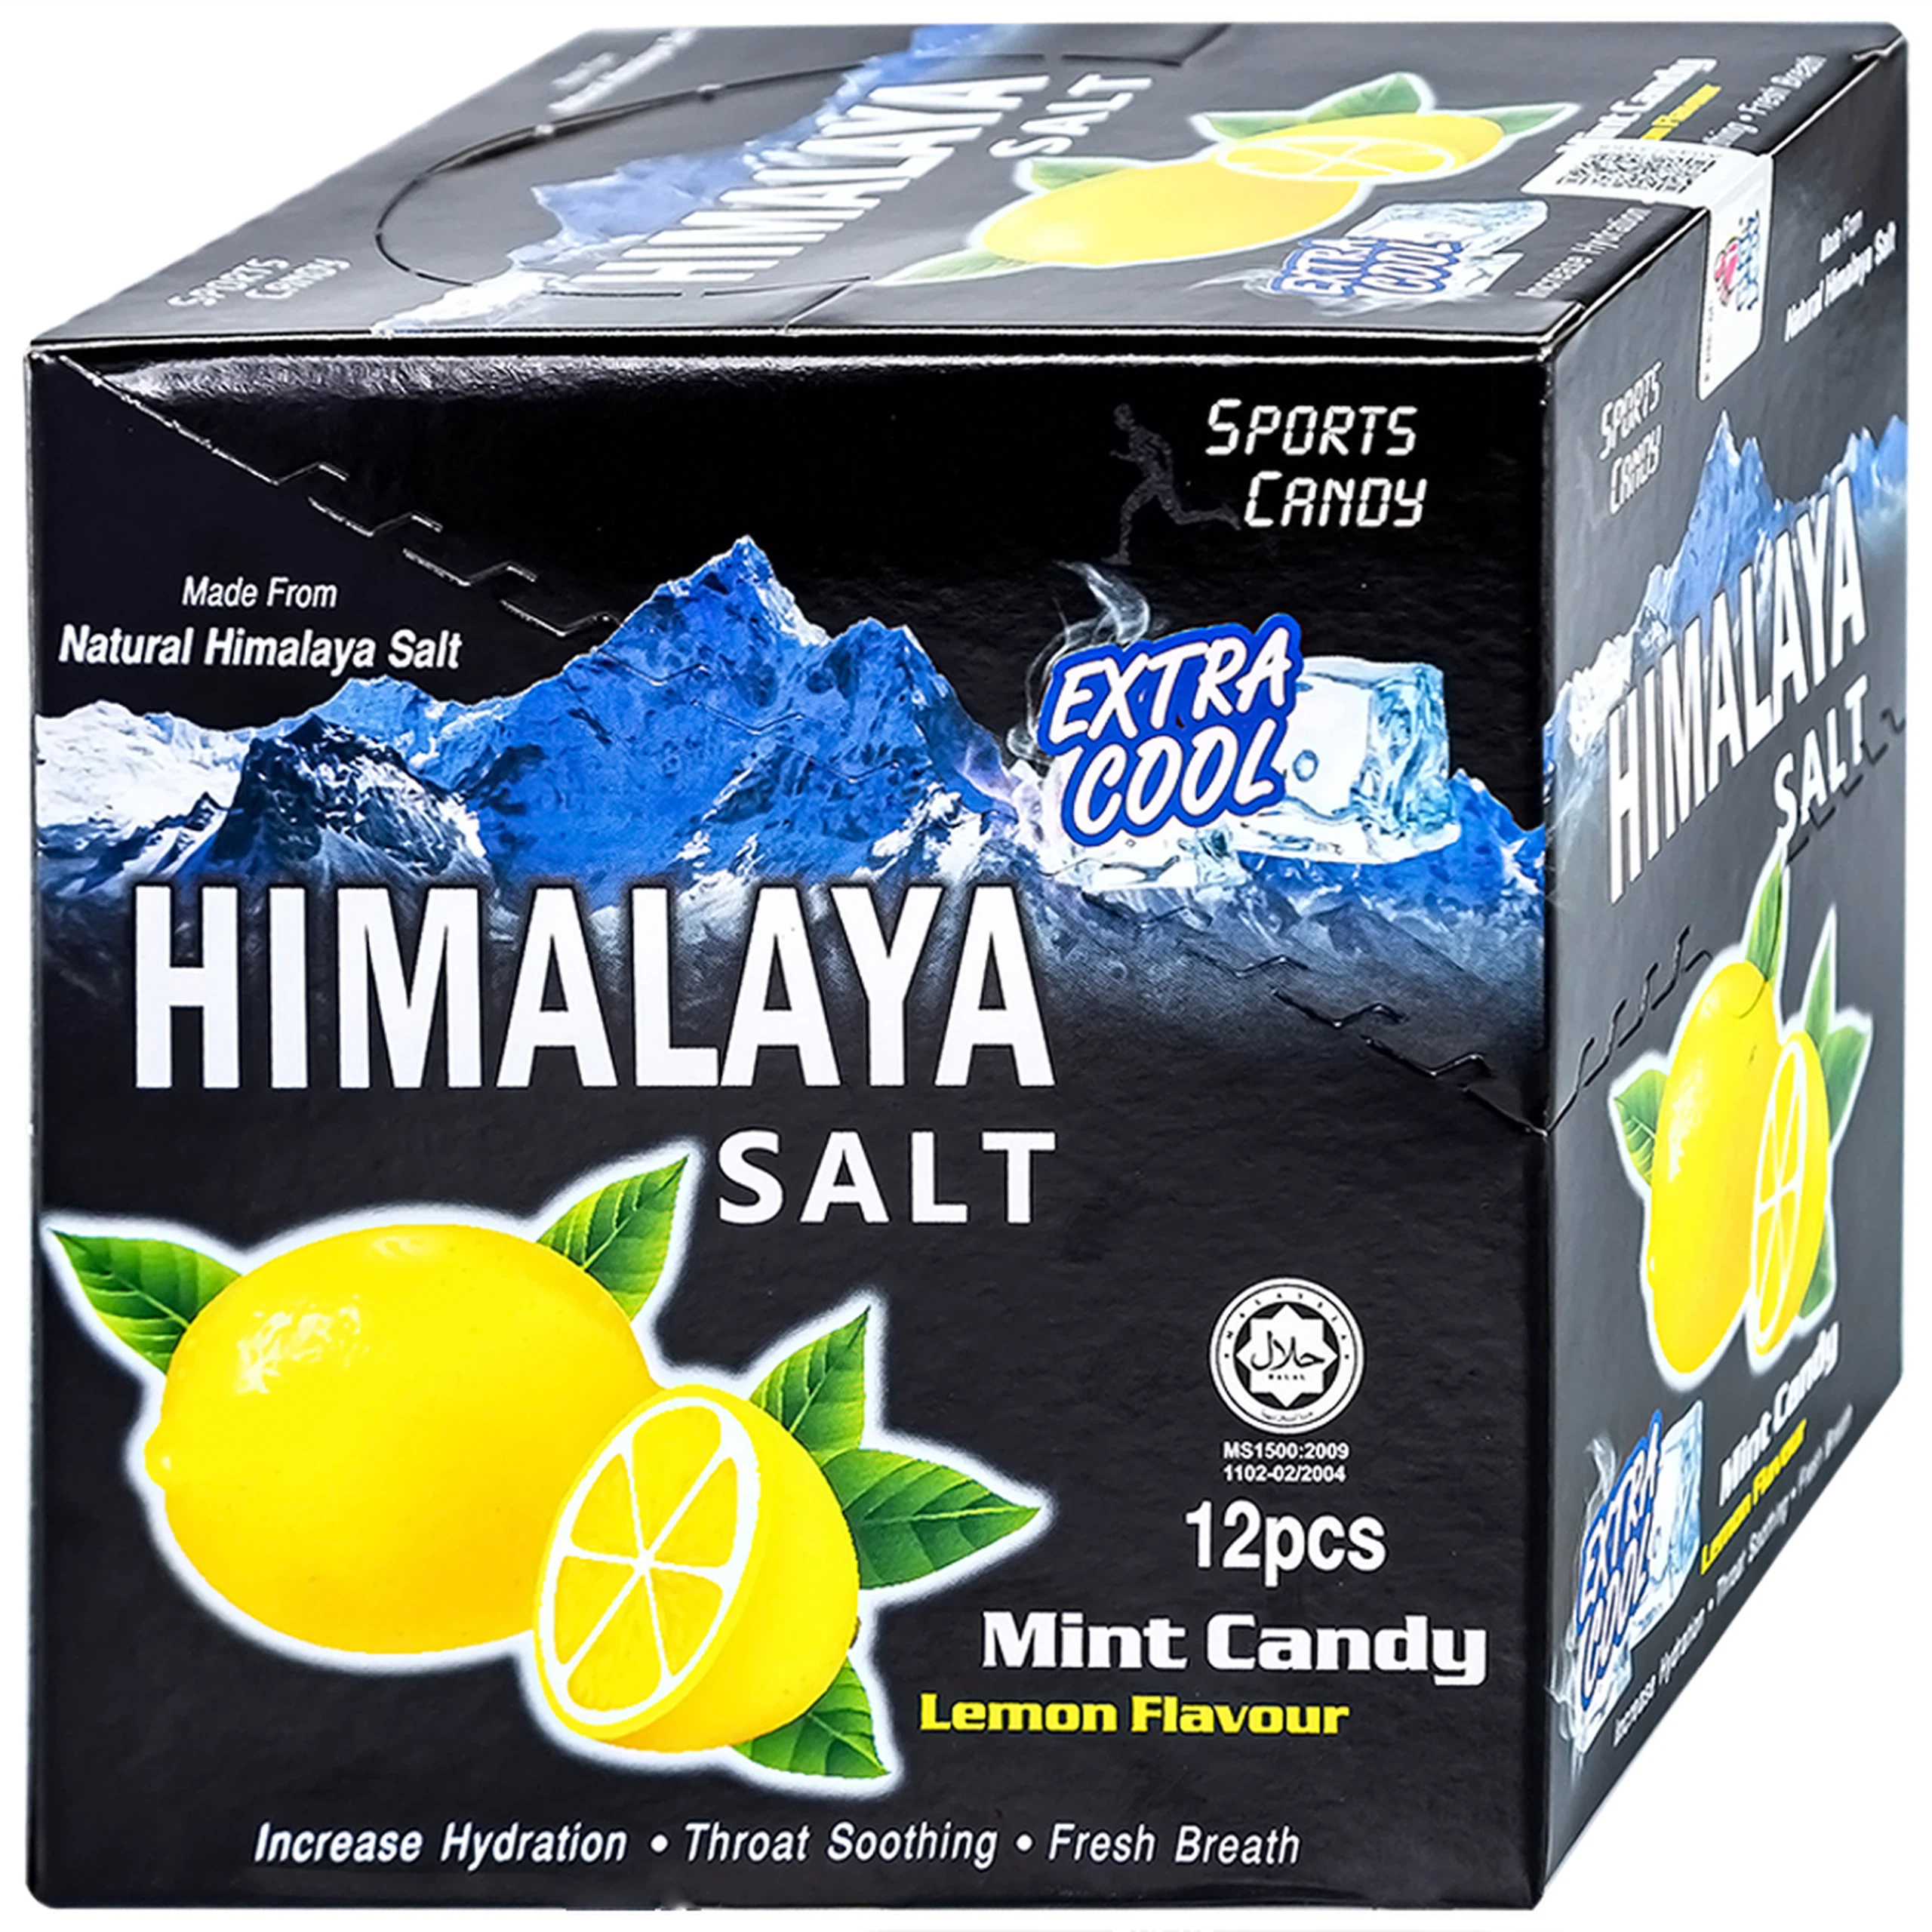 Kẹo chanh muối Himalaya vị bạc hà bổ sung dinh dưỡng, năng lượng và các Vitamin C (12 gói x 15g)